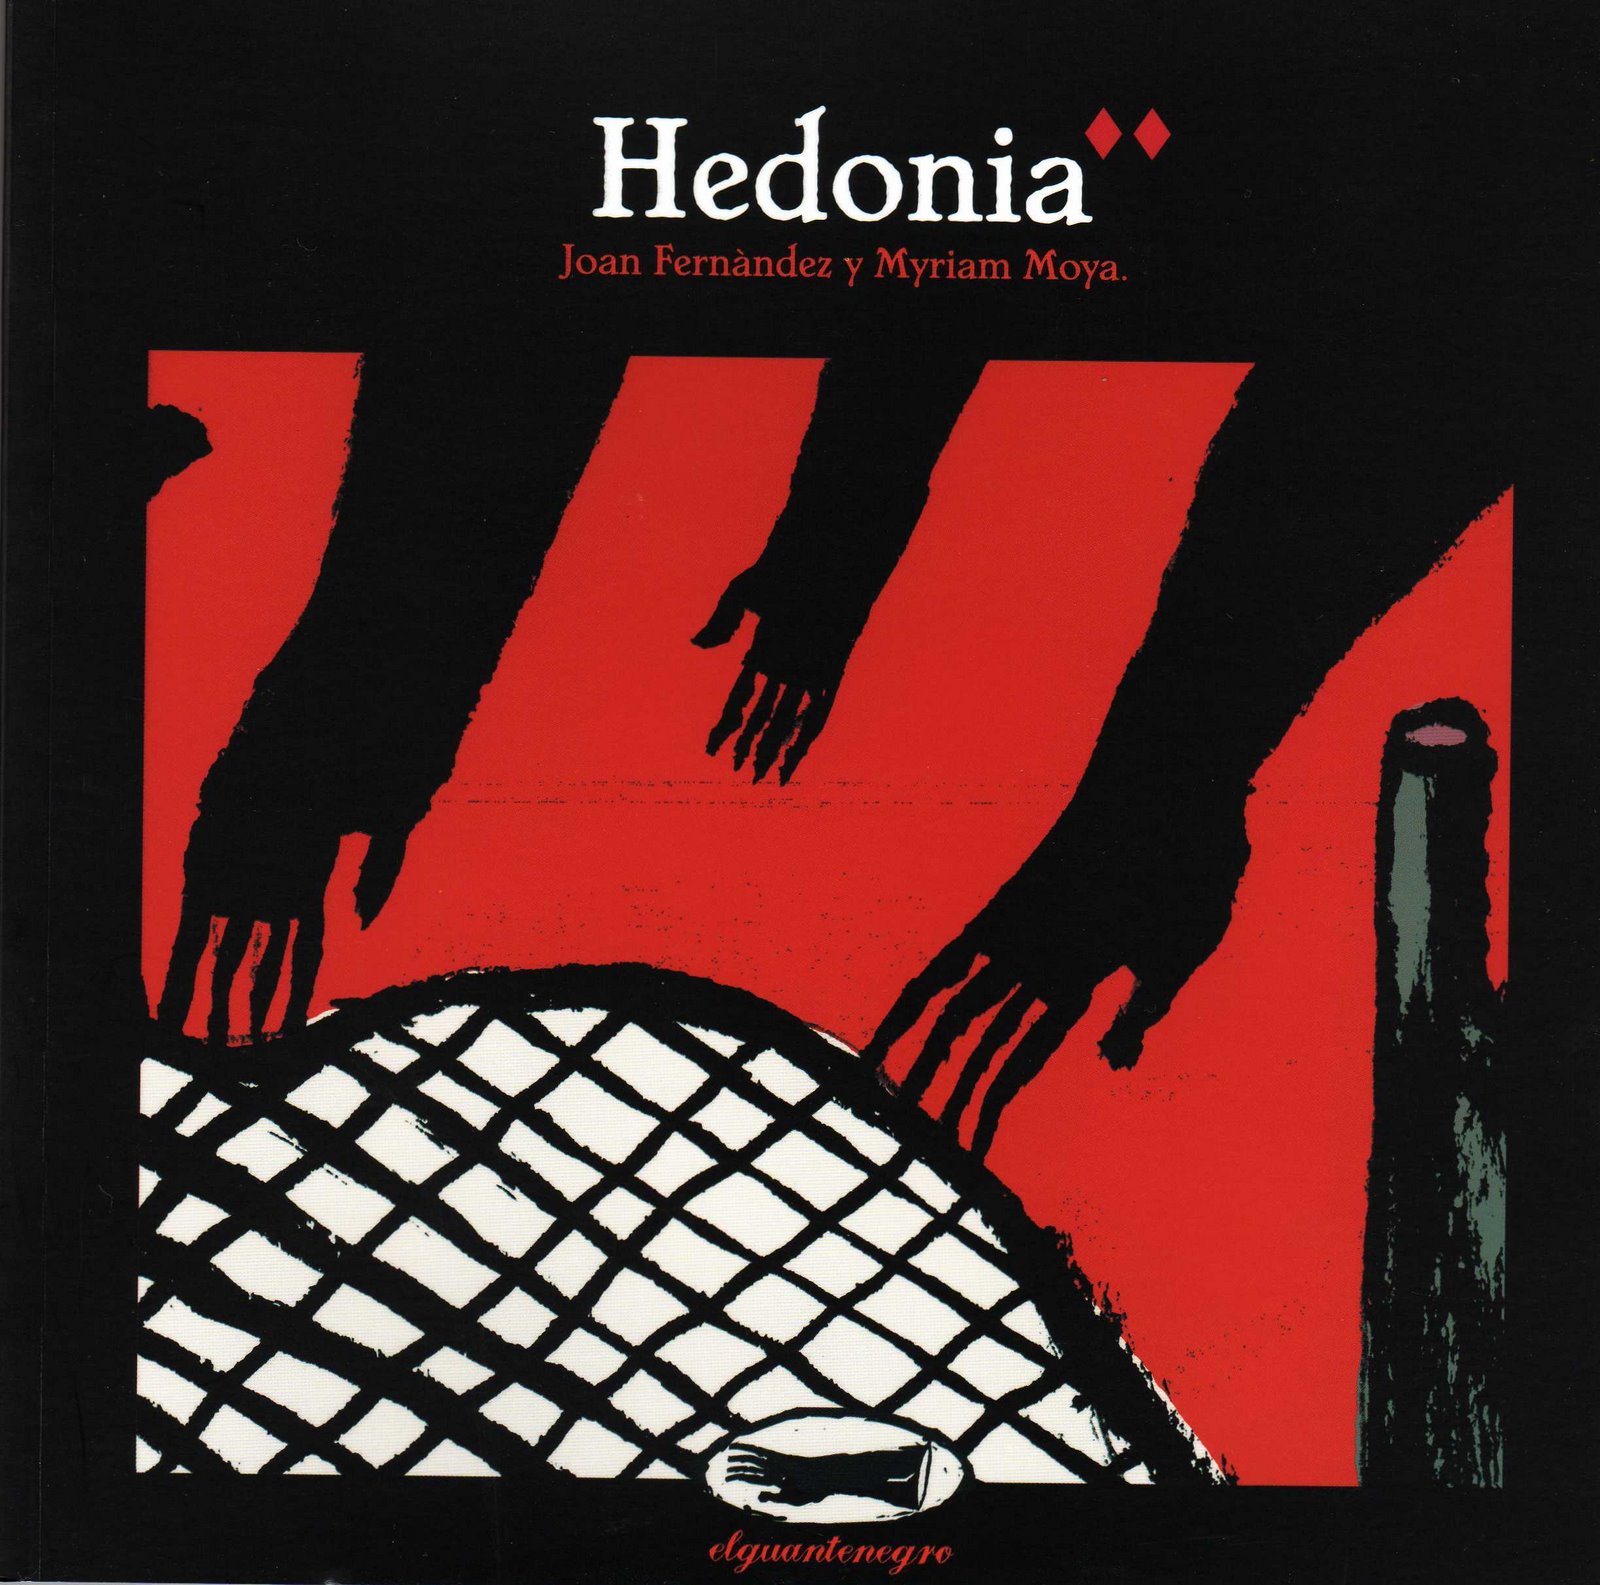 Hedonia